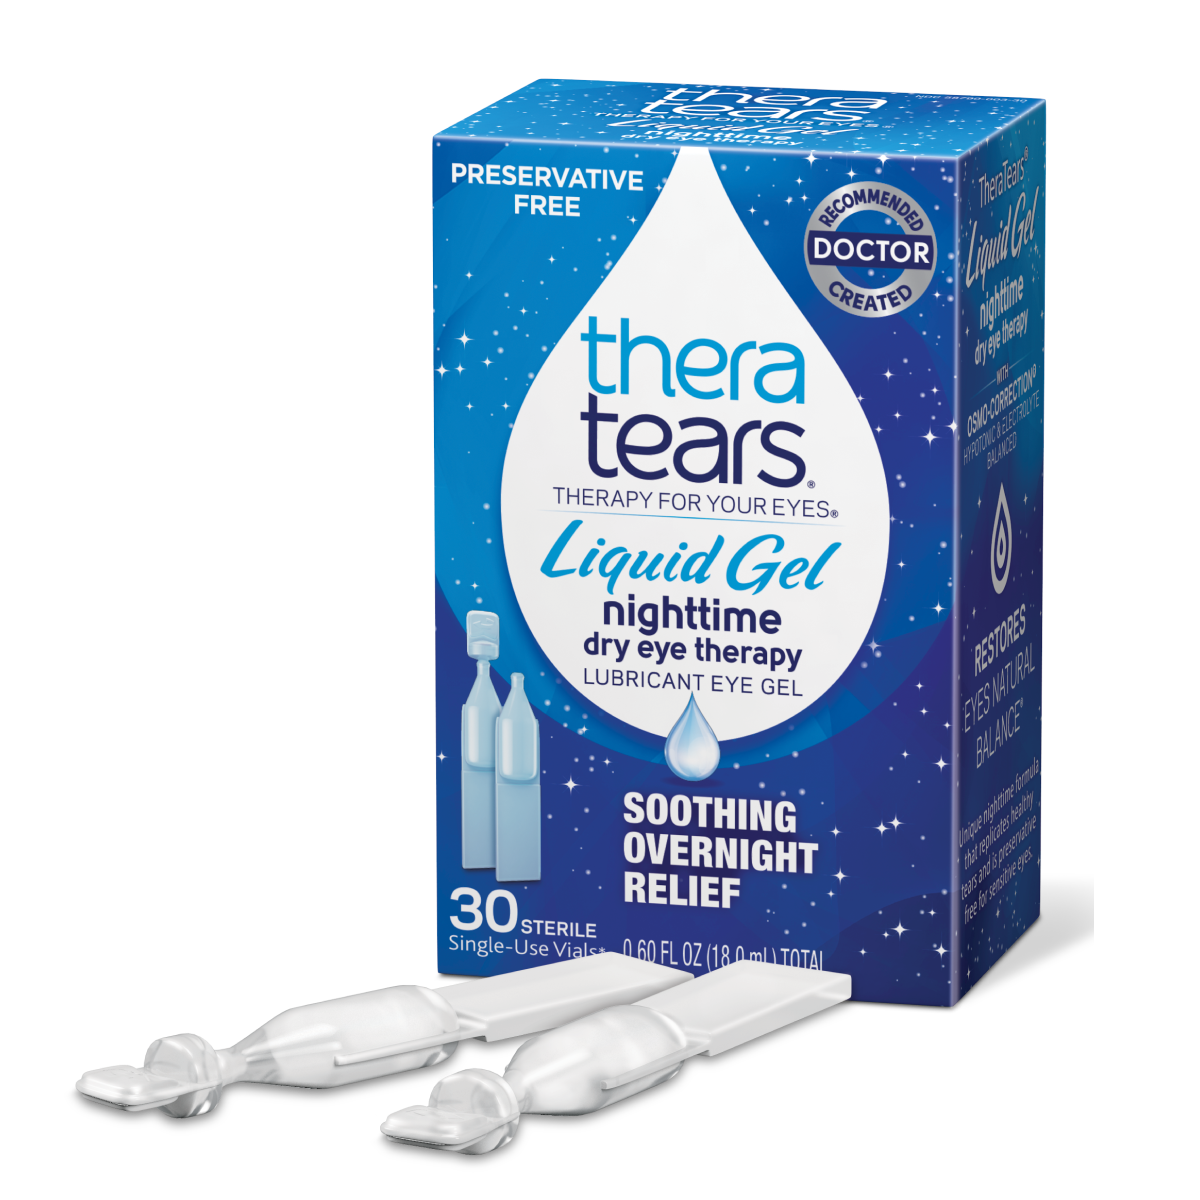 TheraTears Liquid Gel Nighttime Dry Eye Therapy Lubricant Eye Gel